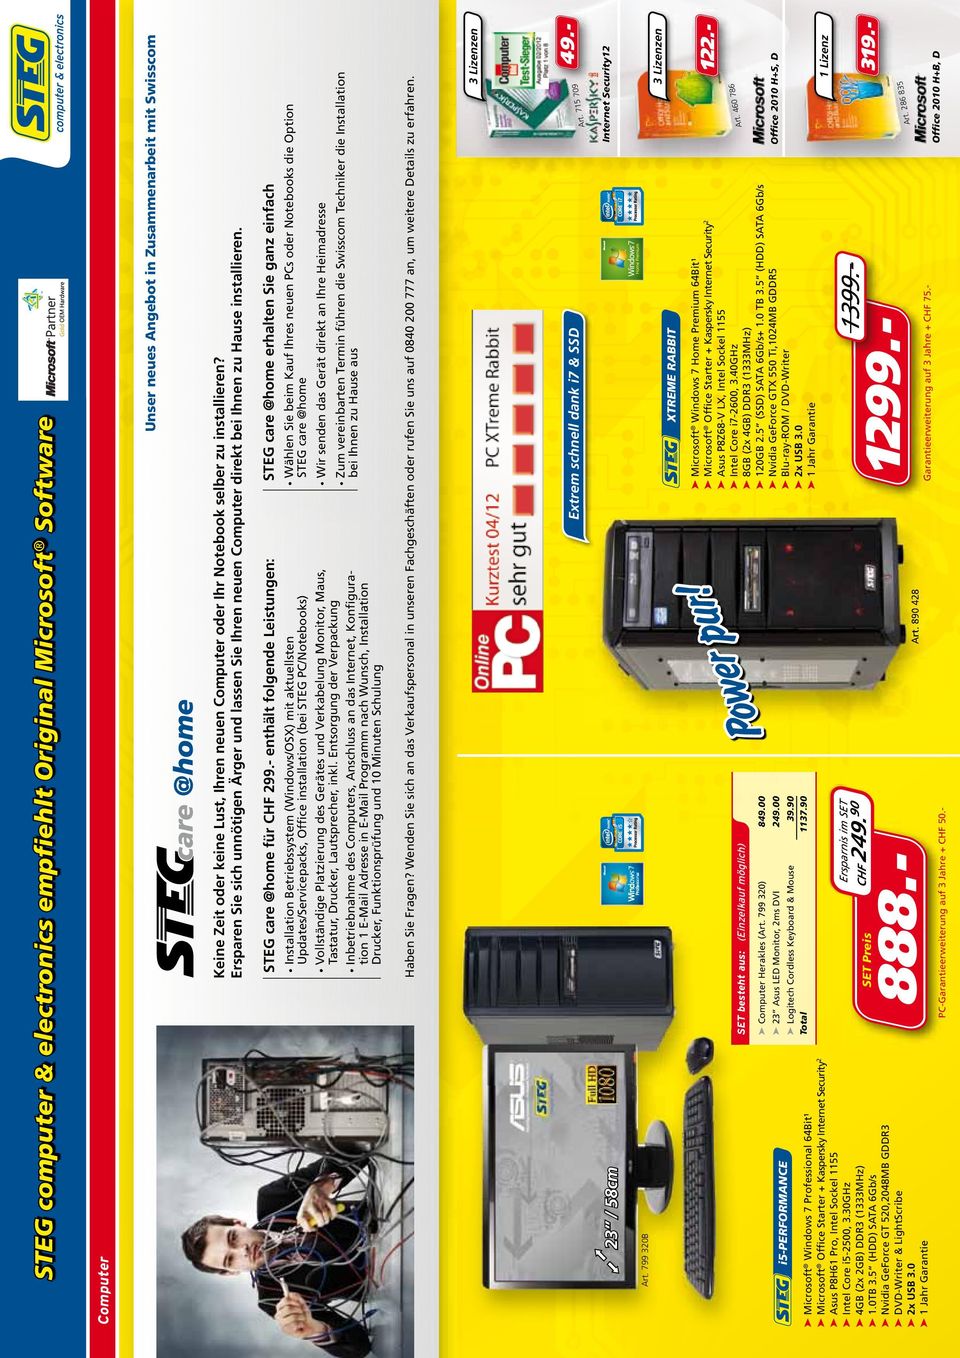 799 320B Computer Installation Betriebssystem (Windows/OSX) mit aktuellsten Updates/Servicepacks, Office installation (bei STEG PC/Notebooks) Vollständige Platzierung des Gerätes und Verkabelung